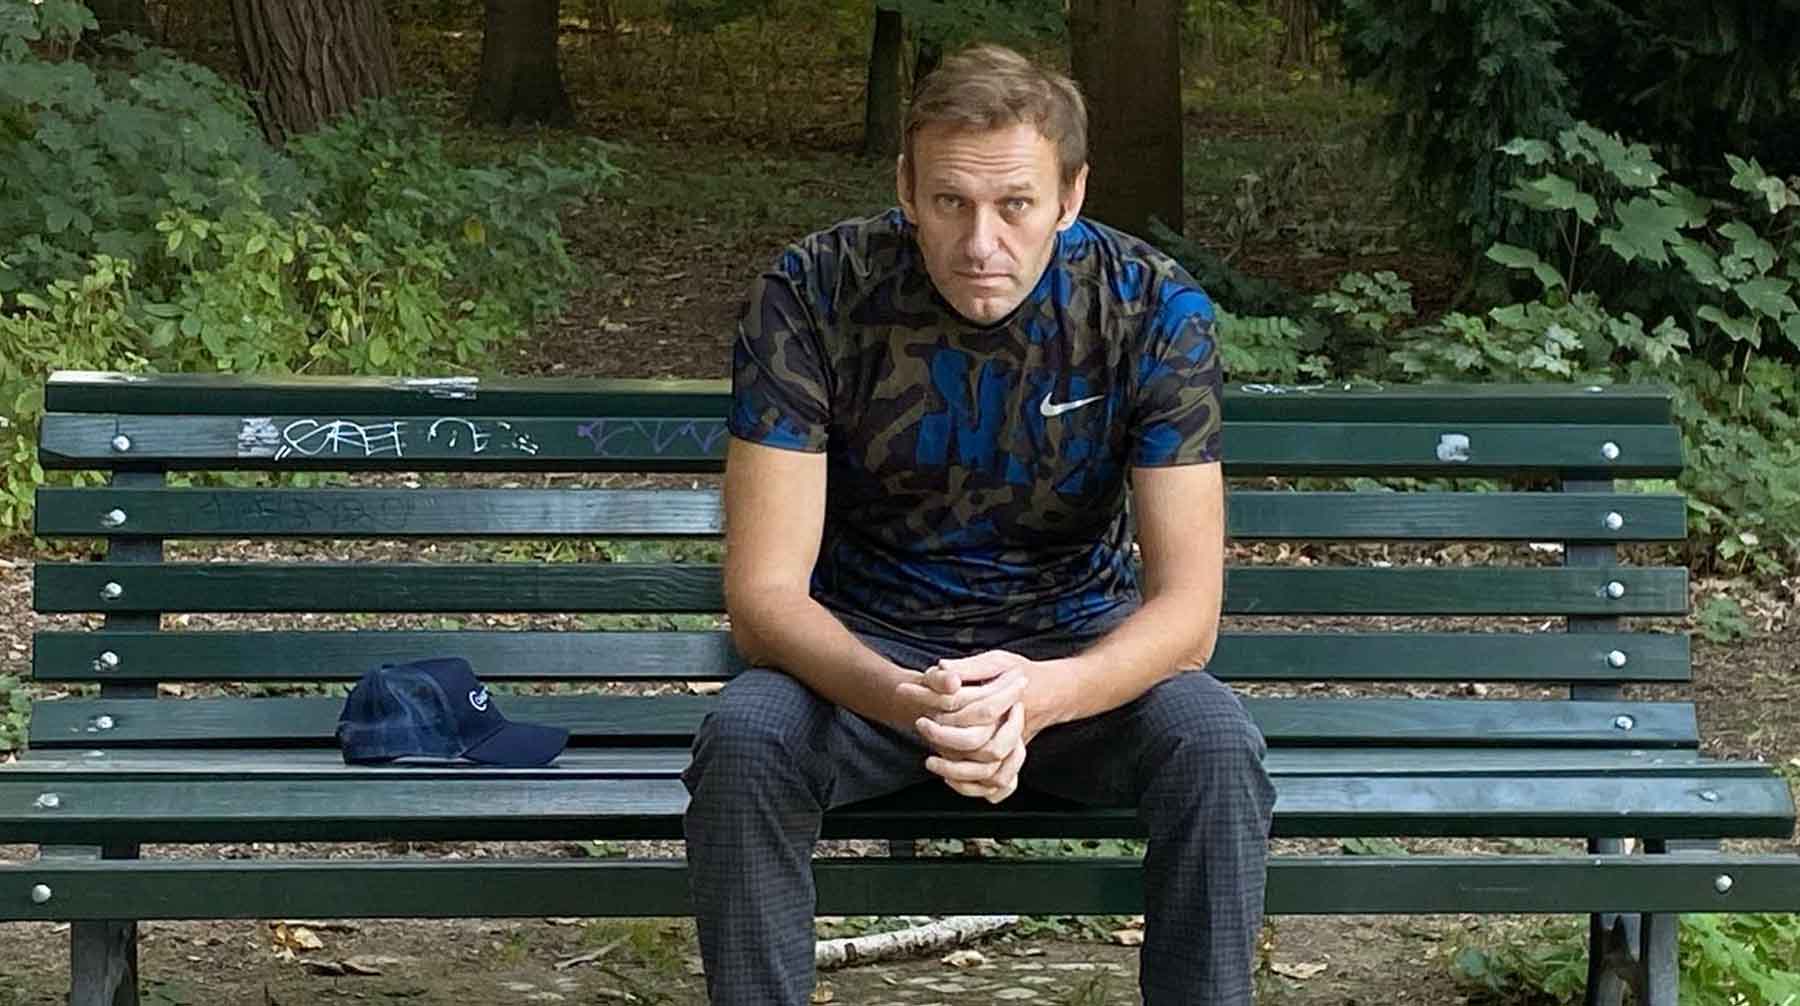 Оппозиционер признался, что из-за допроса ему было некогда посмотреть трансляцию пресс-конференции Путина Фото: © Facebook / Алексей Навальный